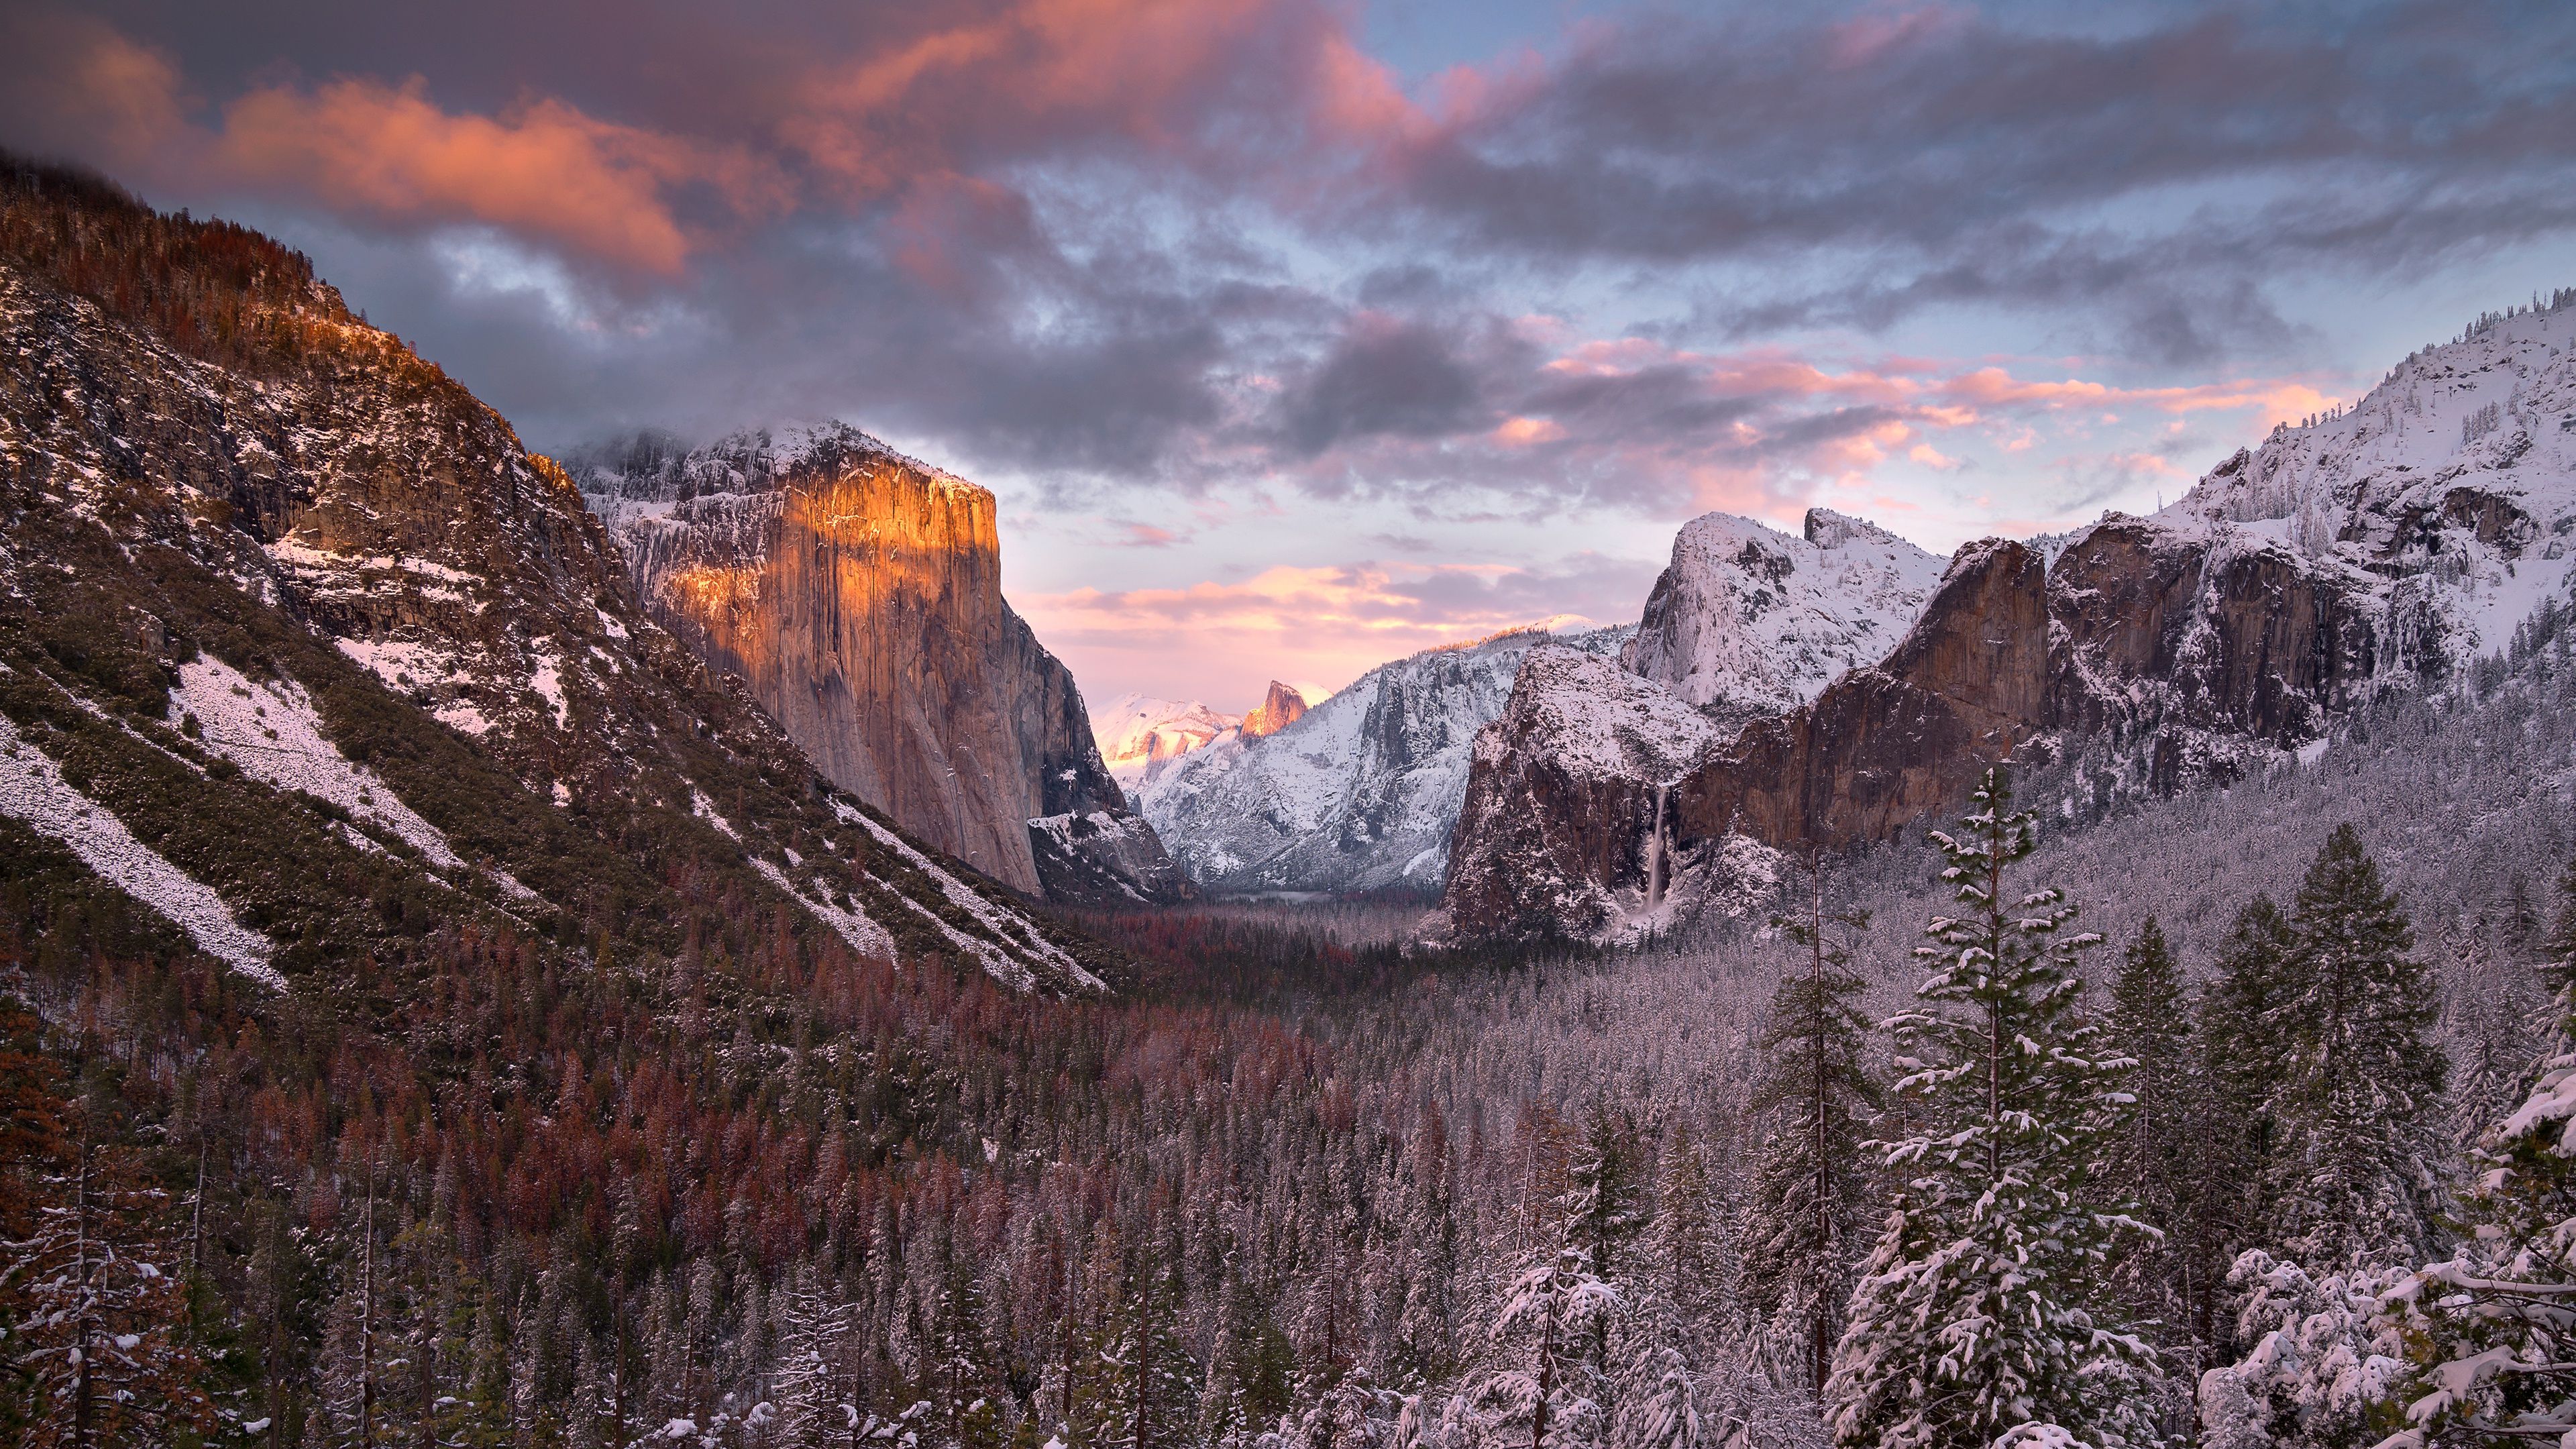 Hình nền 4K Thung lũng Yosemite: Với hình nền 4K tại Thung lũng Yosemite, bạn sẽ trải nghiệm được sự tuyệt vời của cảnh quan mà không cần phải đến đó. Bức tranh nền sẽ đưa bạn vào thế giới thiên nhiên nguyên sơ, nơi mà những dãy núi trùng điệp uốn lượn, những thác nước rơi kênh rất đẹp mắt và những rừng cây rậm rạp. Hãy tận hưởng cảm giác này cùng với chúng tôi.